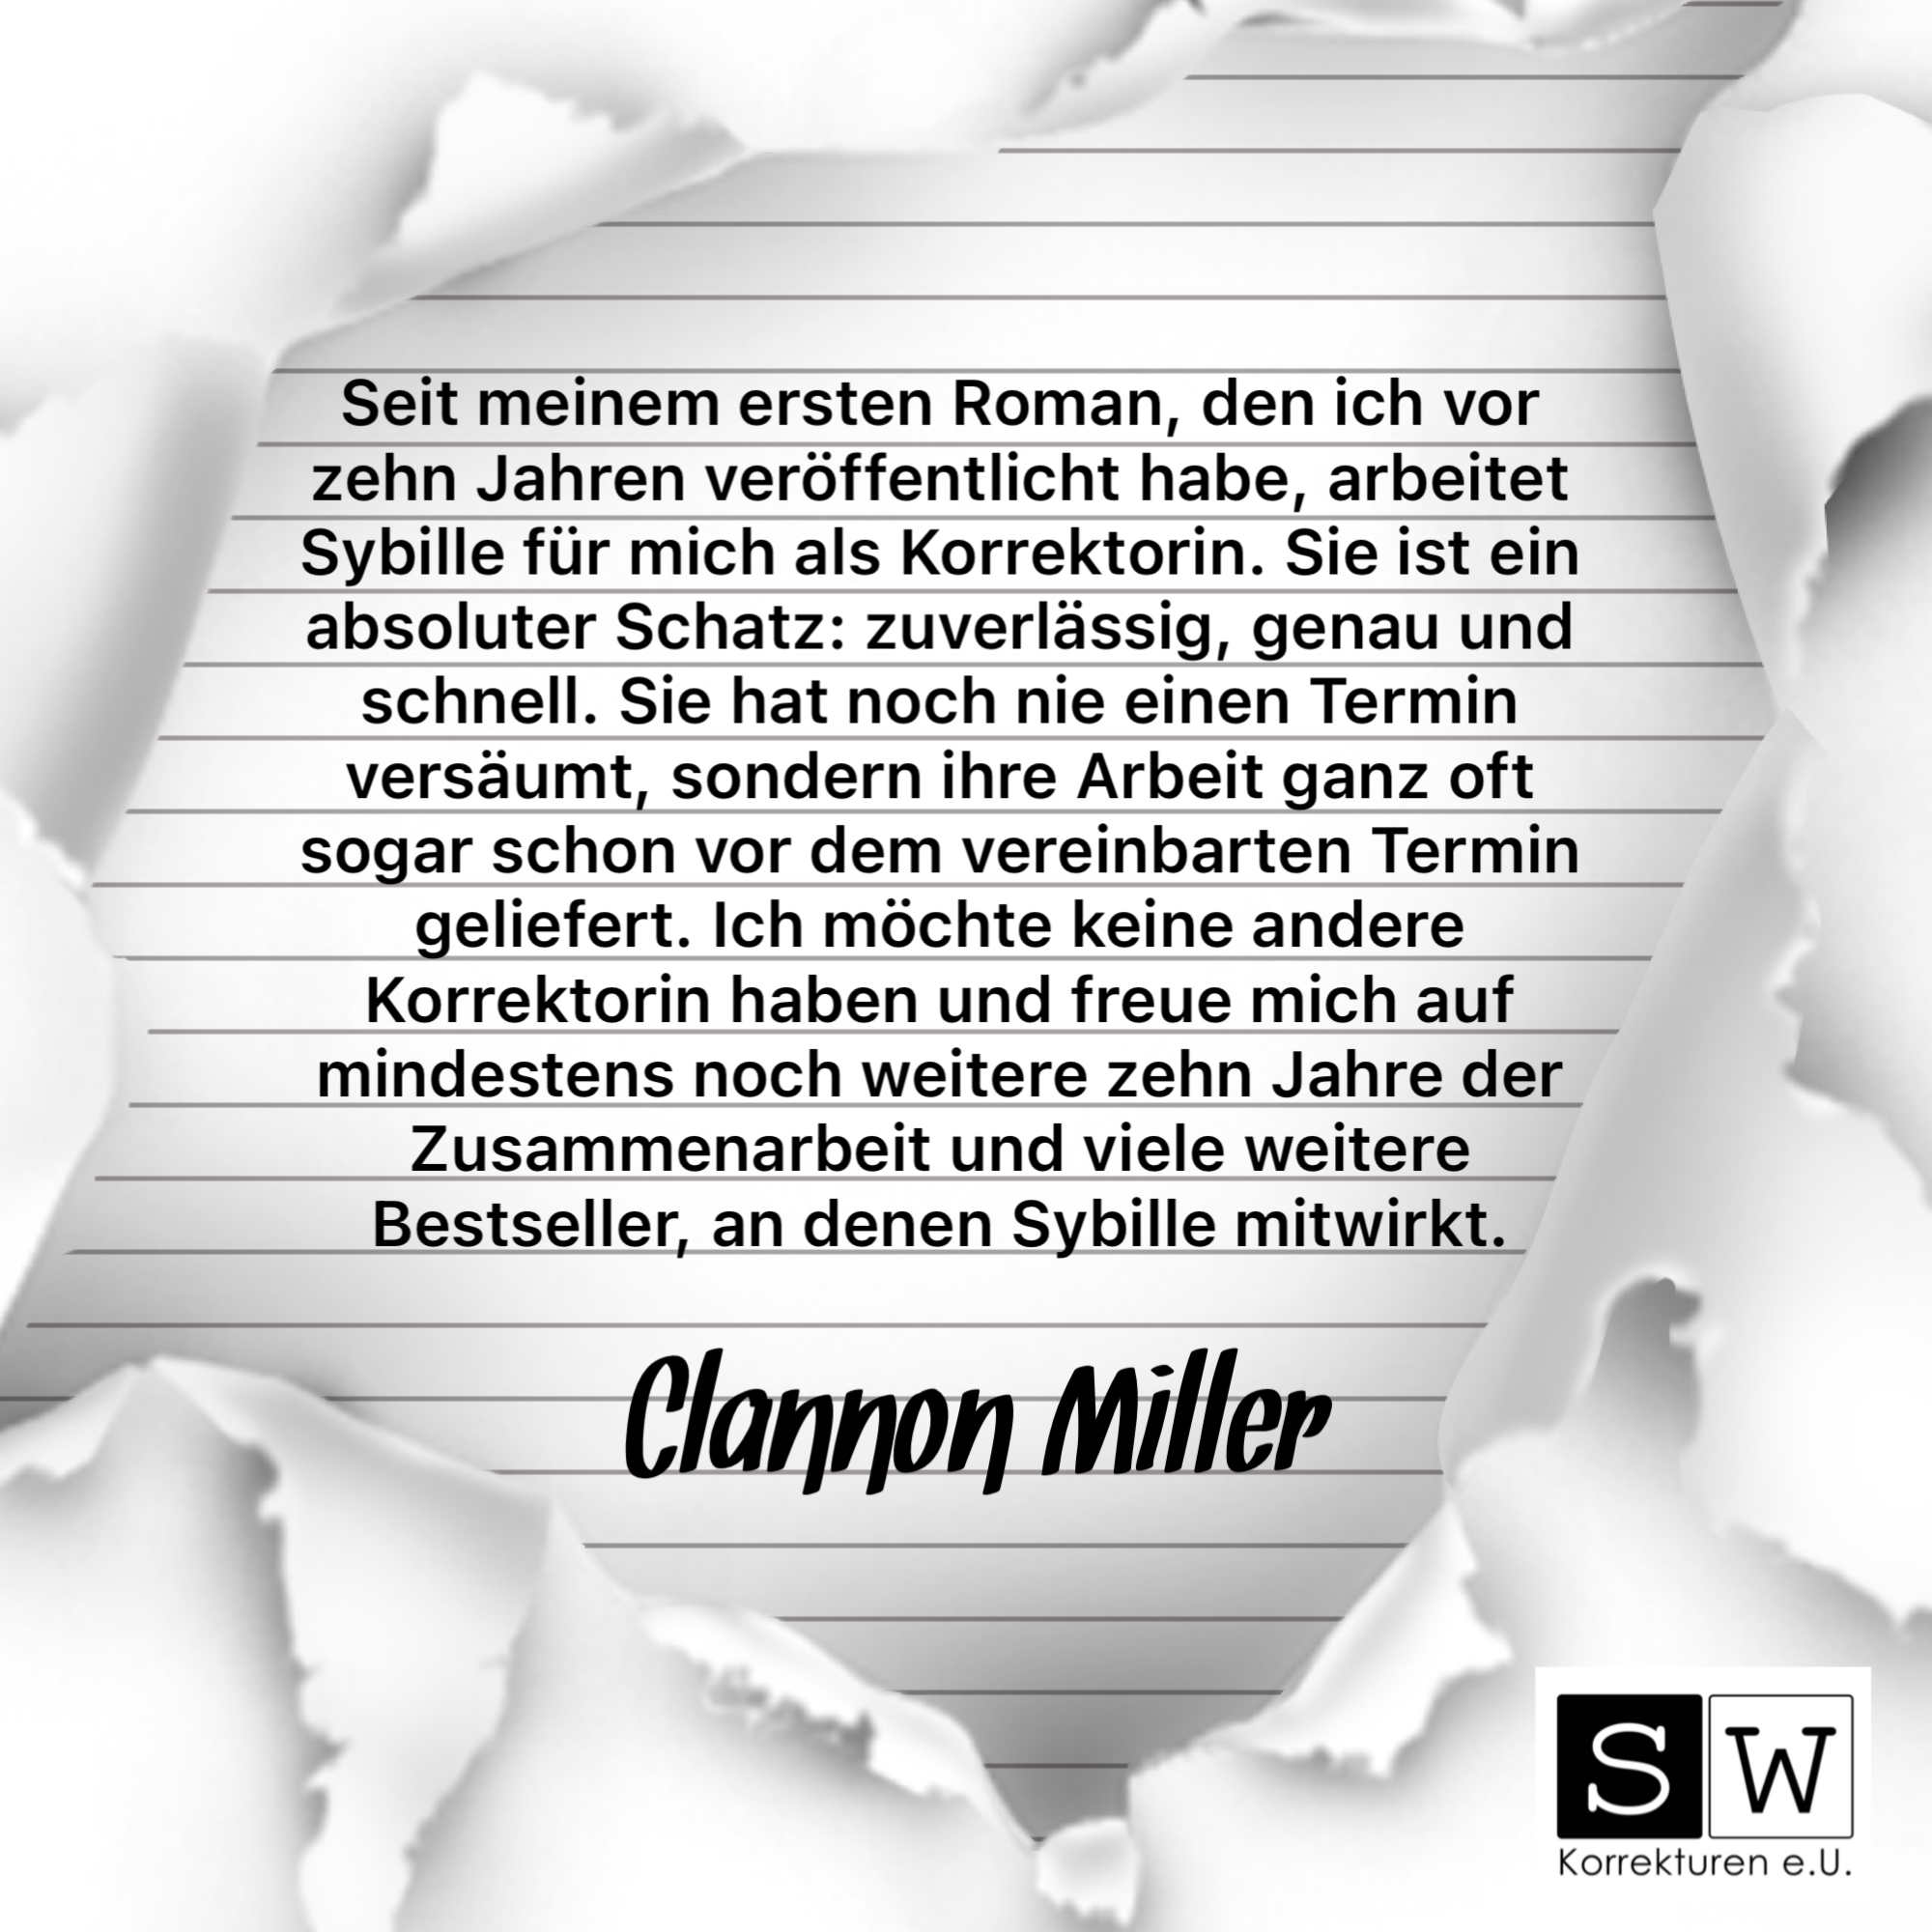 Clannon Miller